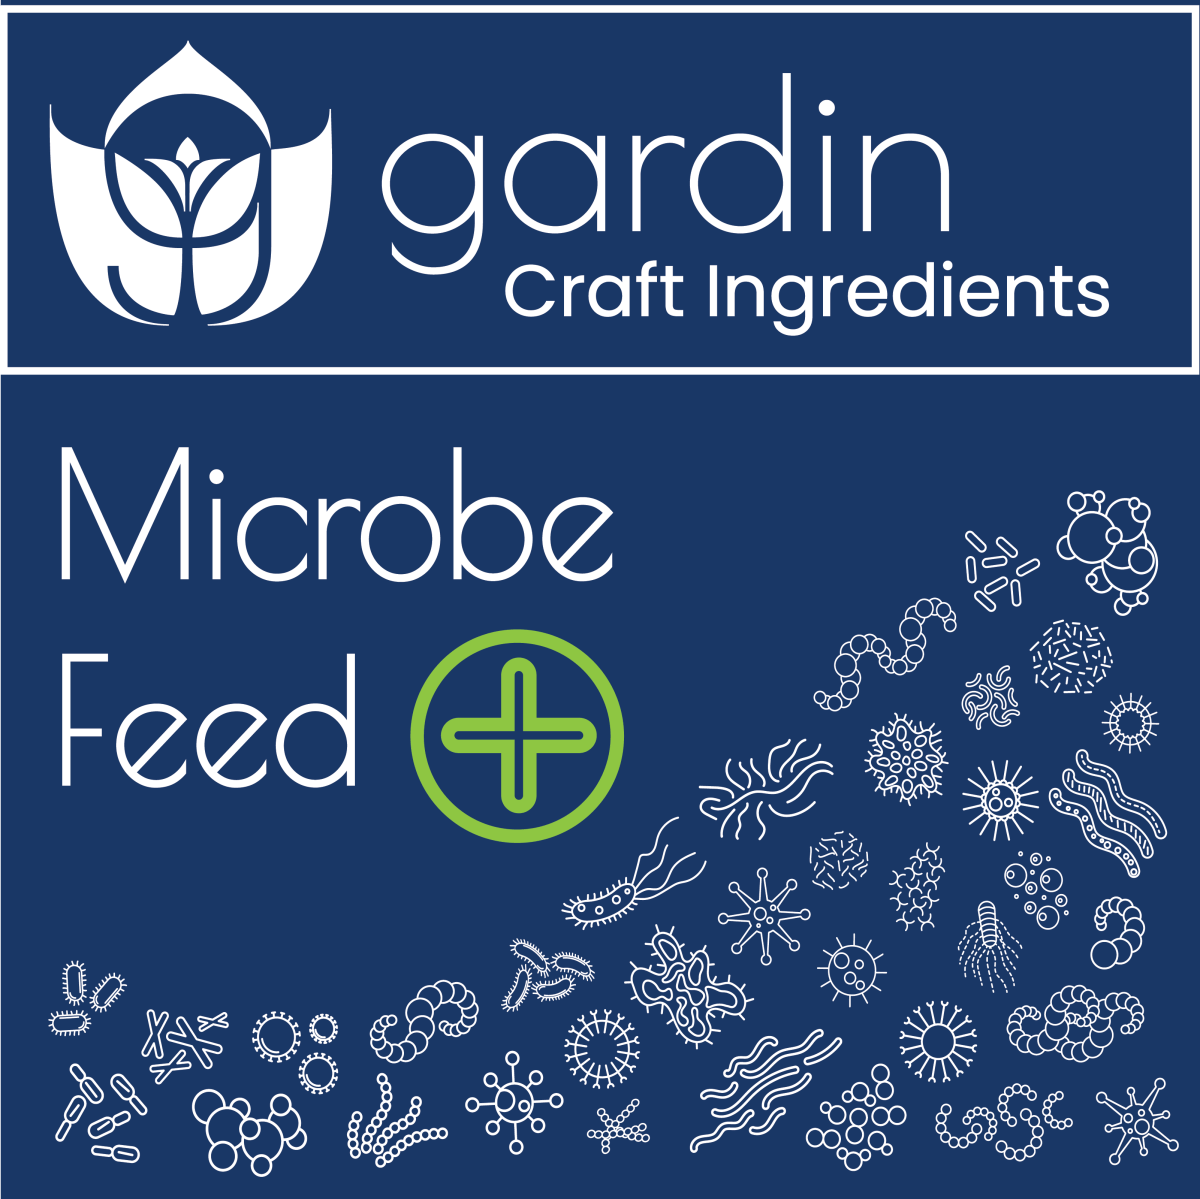 - Microbe Feed Plus + - Gardin Warehouse